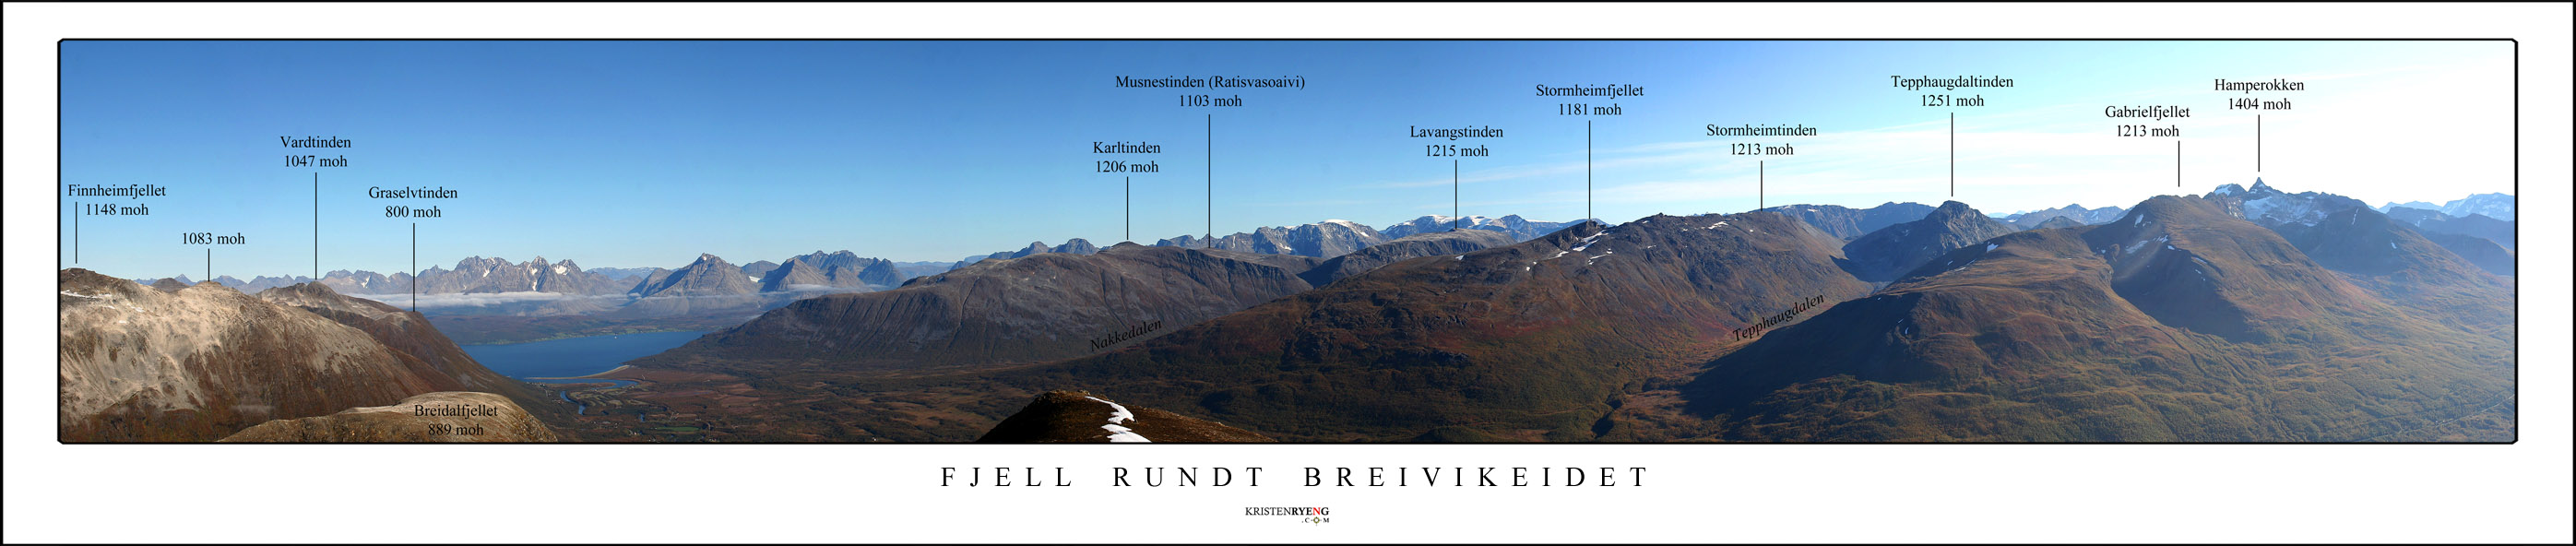 PanoramaStorfjelletMedNavnWEB.jpg - Oversiktsbilde med navn og anvisninger sett fra Storfjellet 1089 moh.